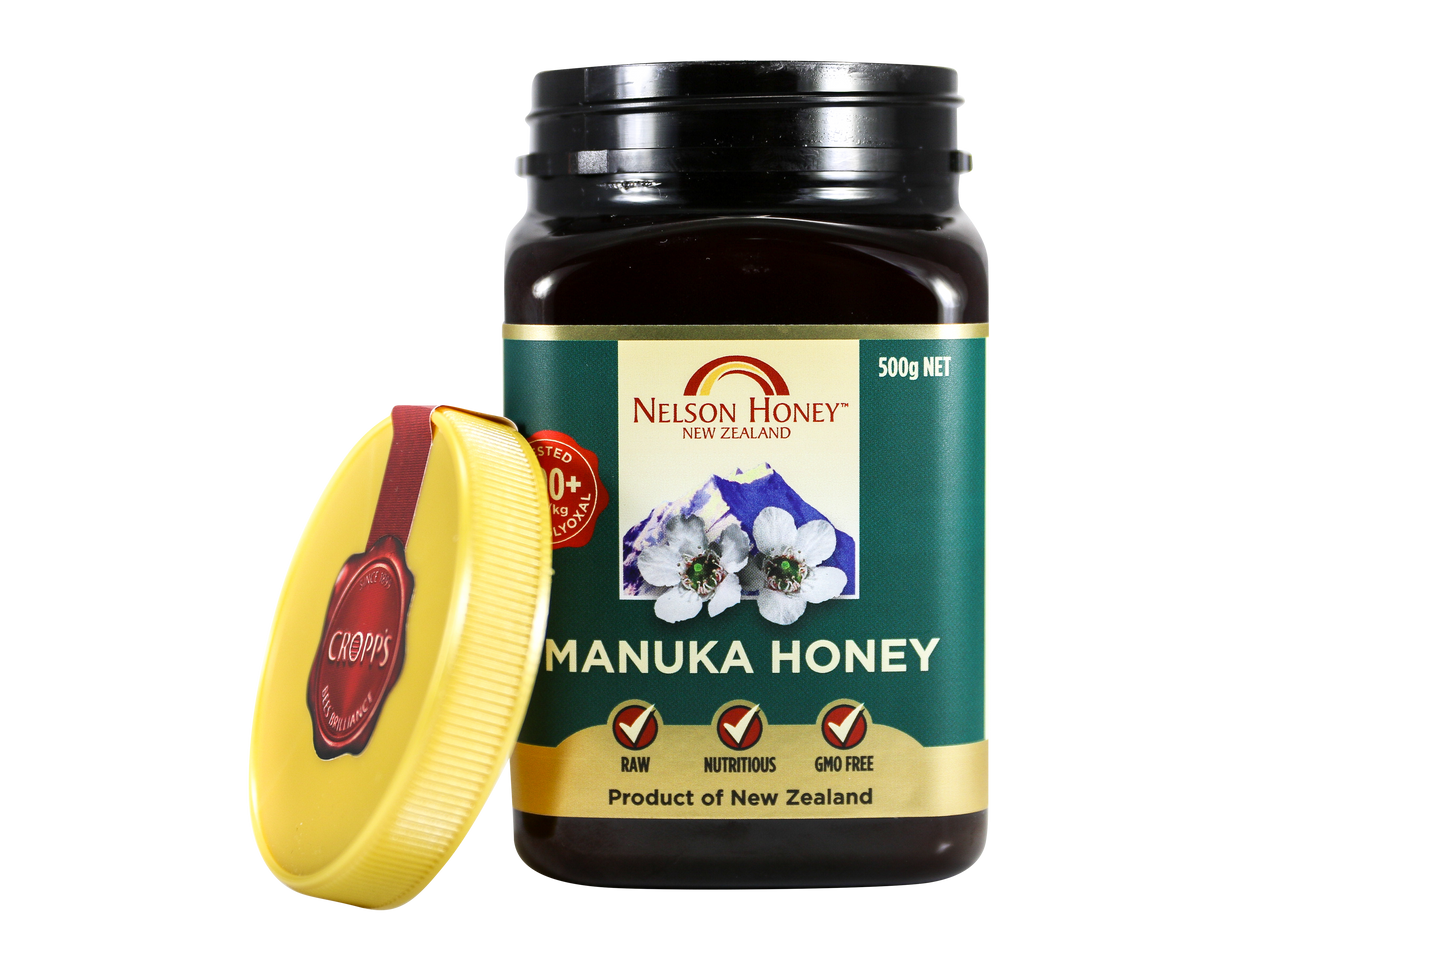 Manuka Honey 100+ 250g